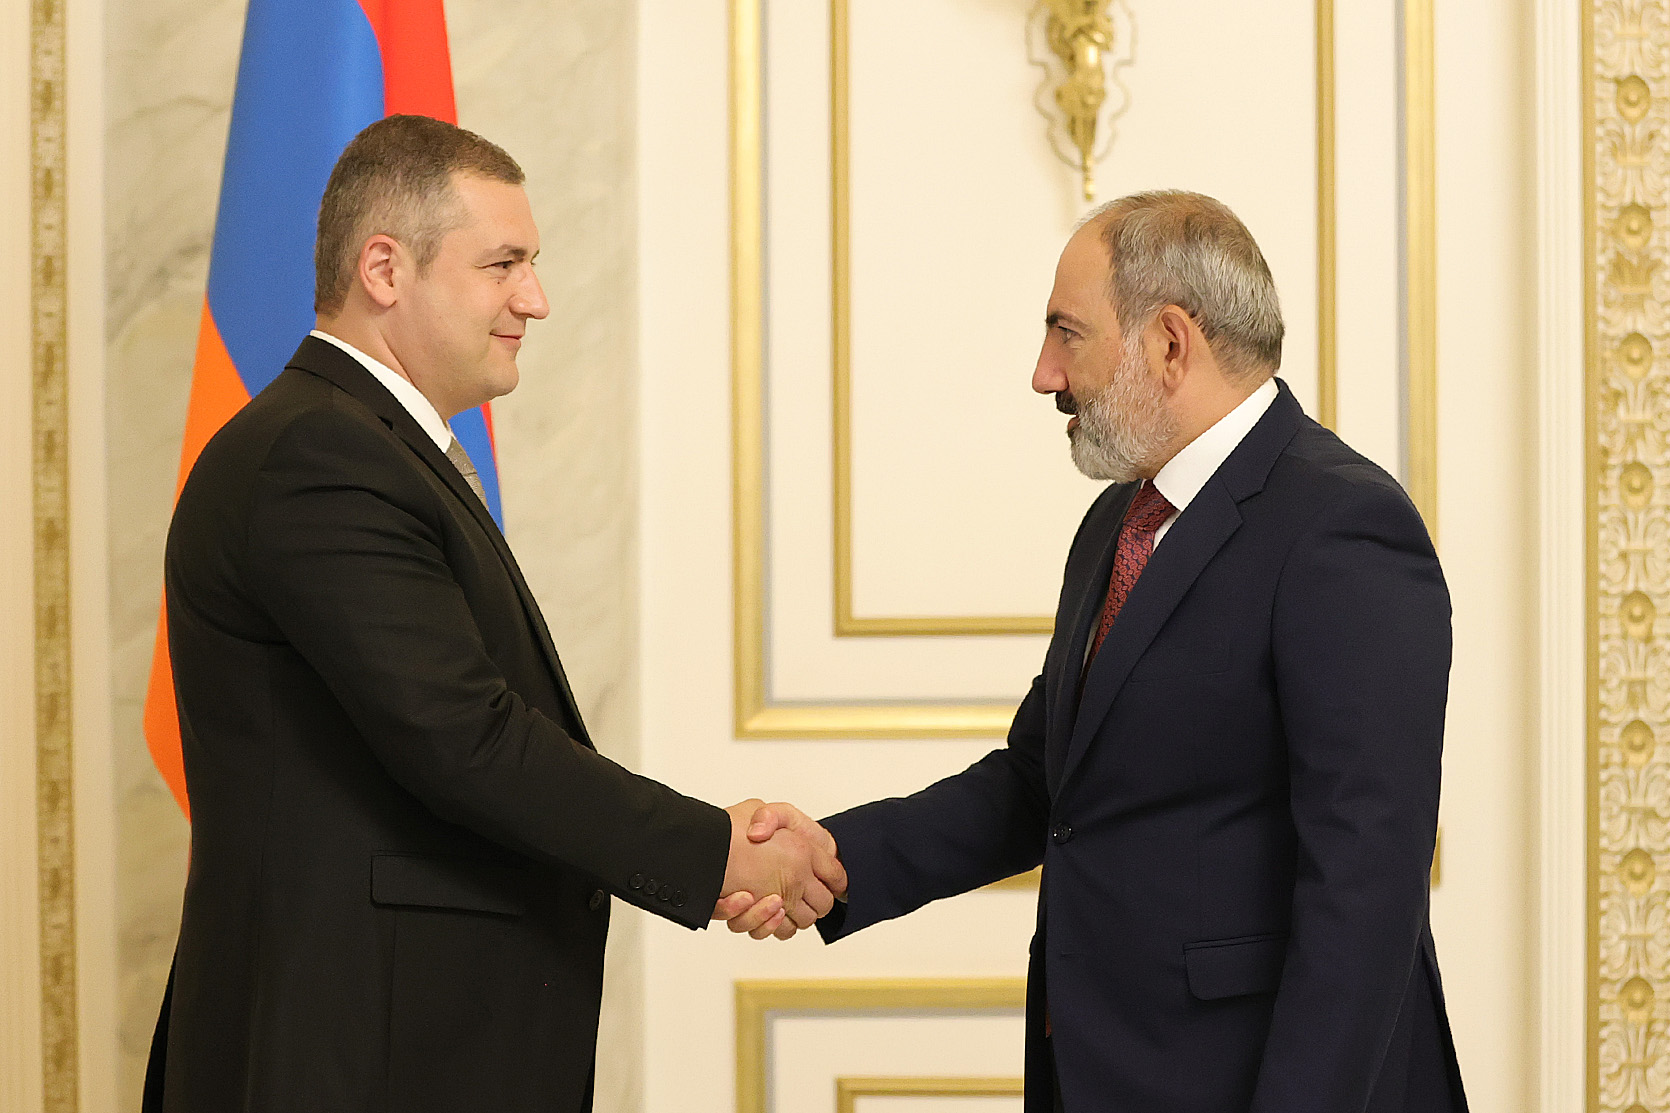 Если сможем внести свой вклад в развитие Армении, это нас удовлетворит: Уриханян Пашиняну